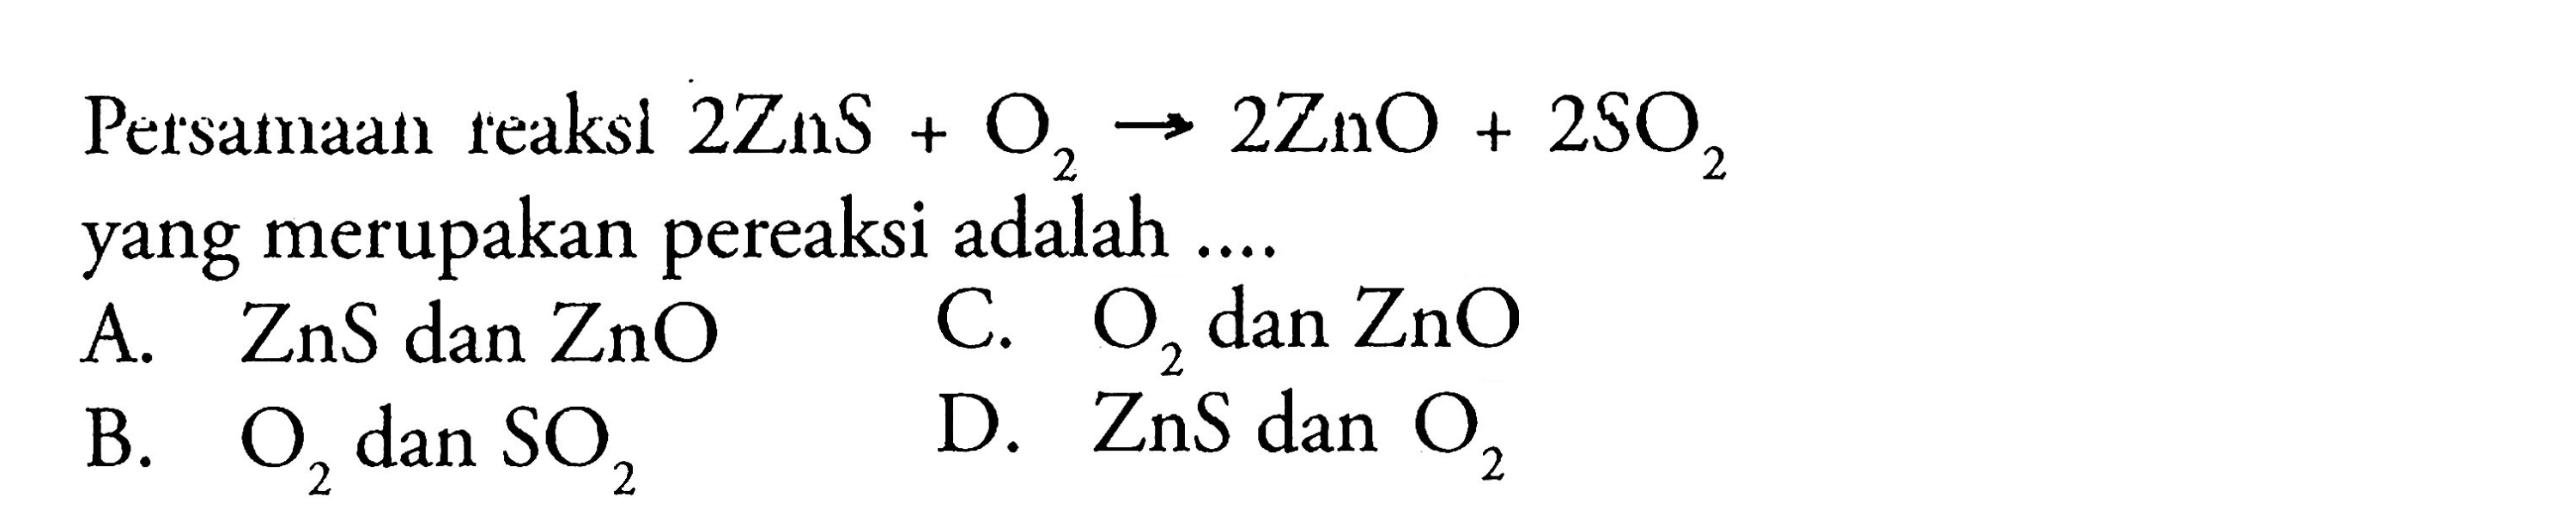 Persamaan reaksi 2ZnS + O2 -> 2ZnO + 2SO2 yang merupakan pereaksi adalah ....